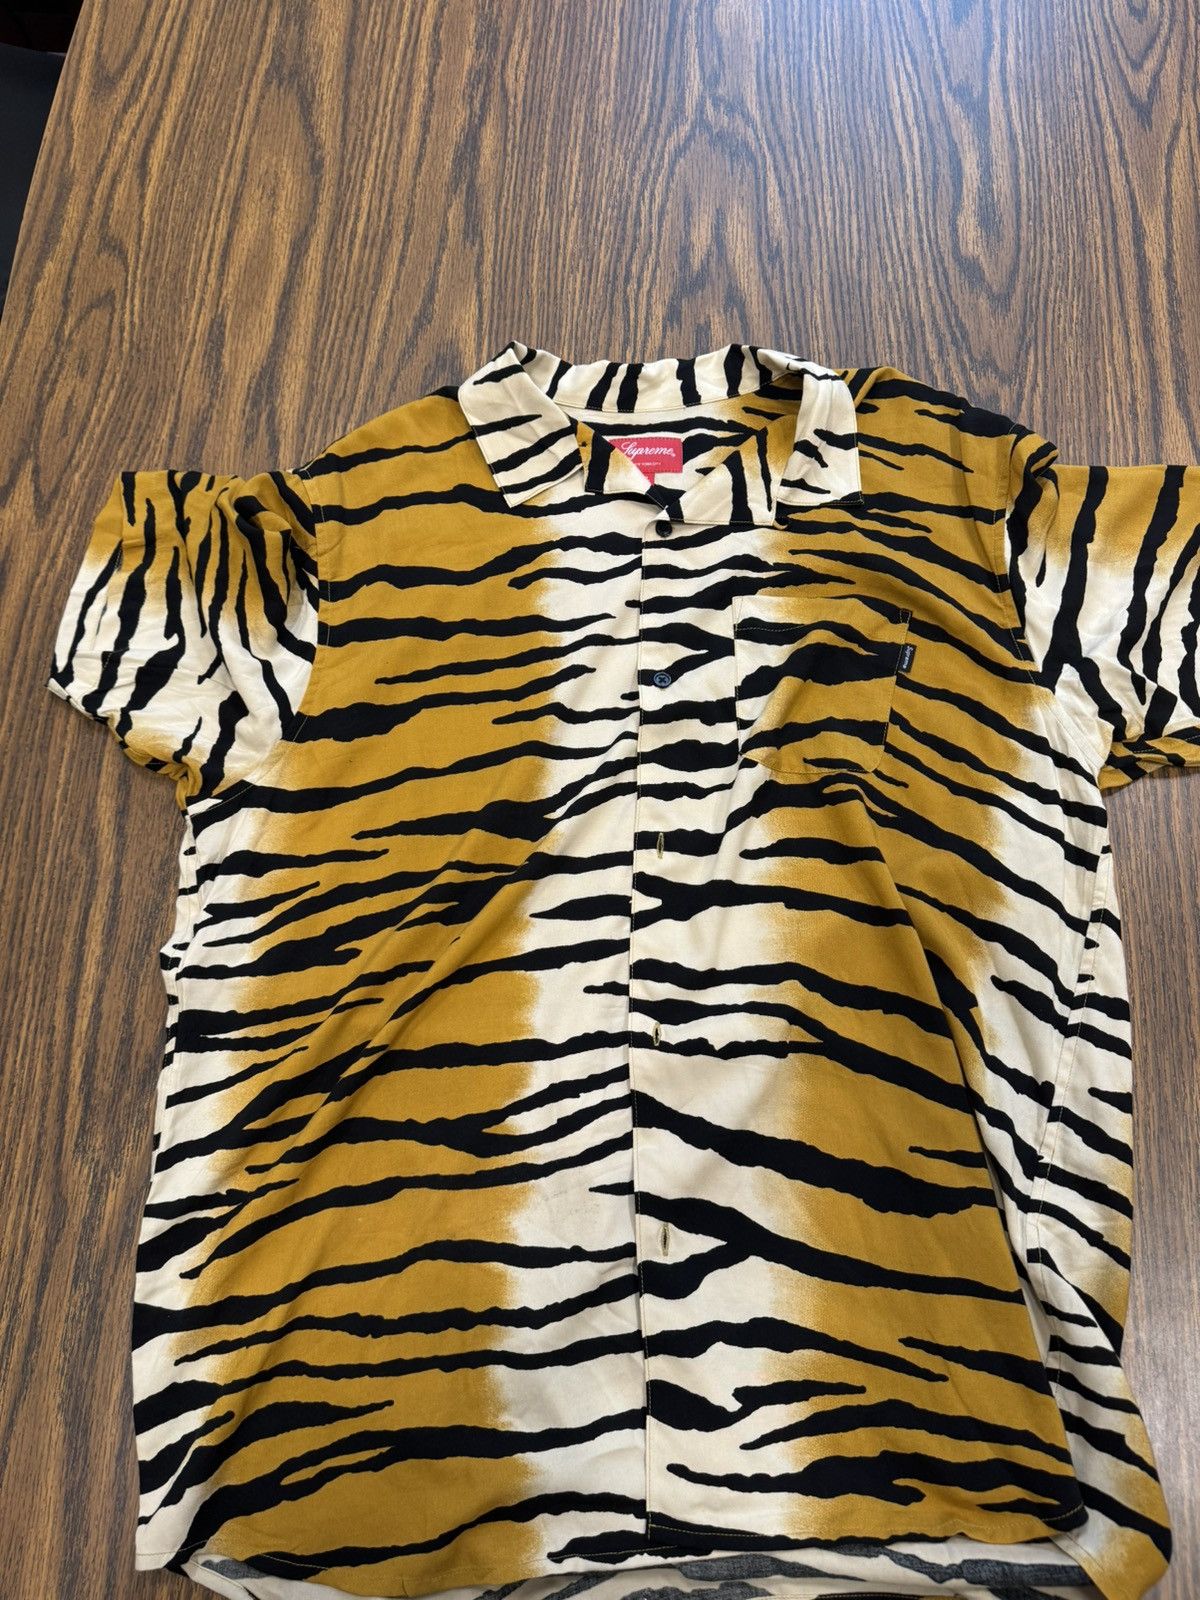 Supreme Supreme SS18 Tiger Stripe Rayon Shirt XL | Grailed